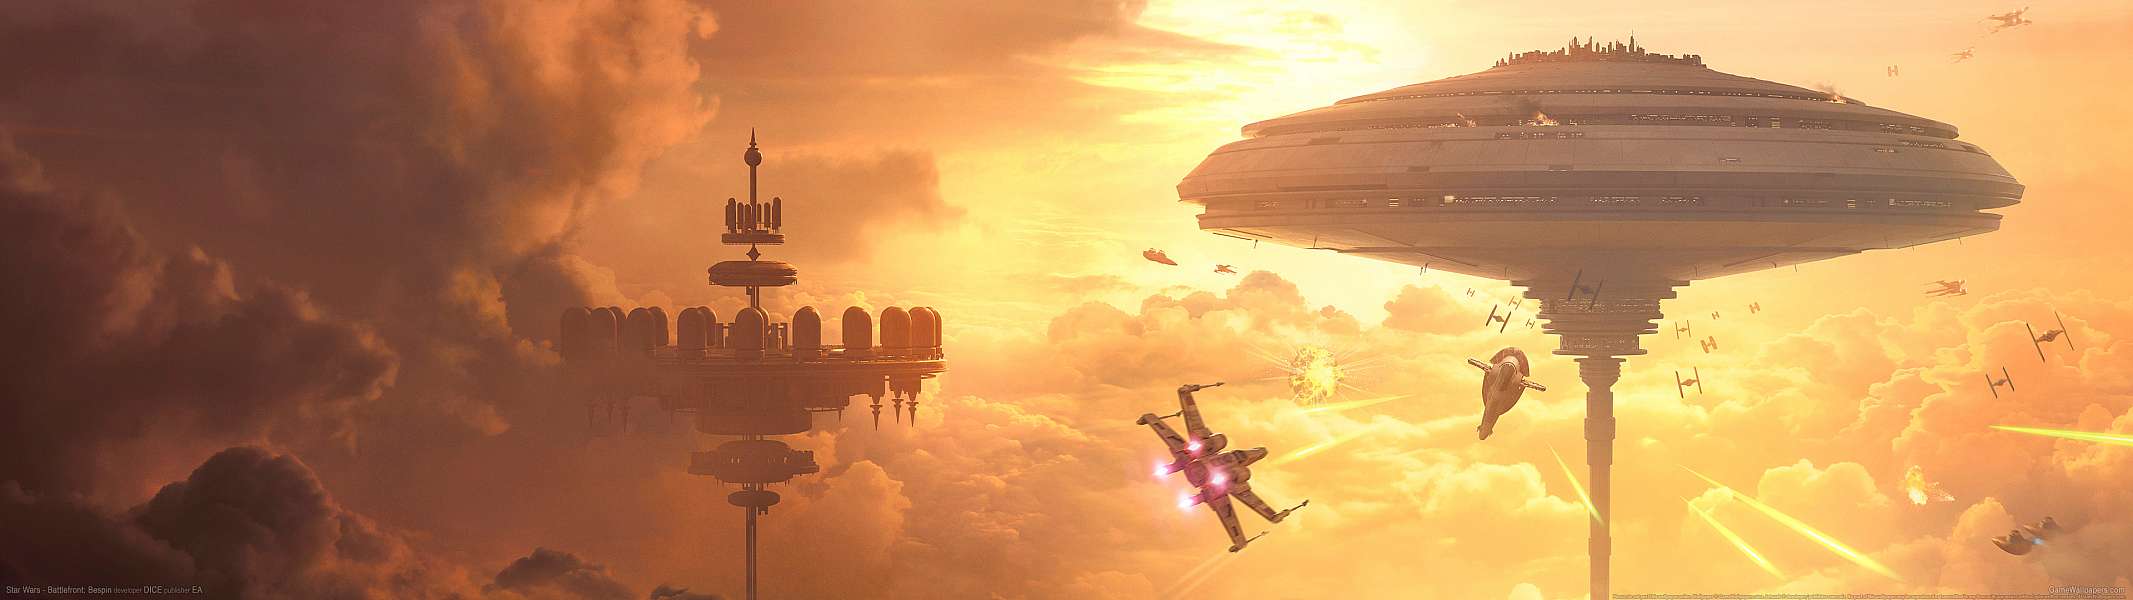 Star Wars - Battlefront: Bespin dual screen fond d'écran